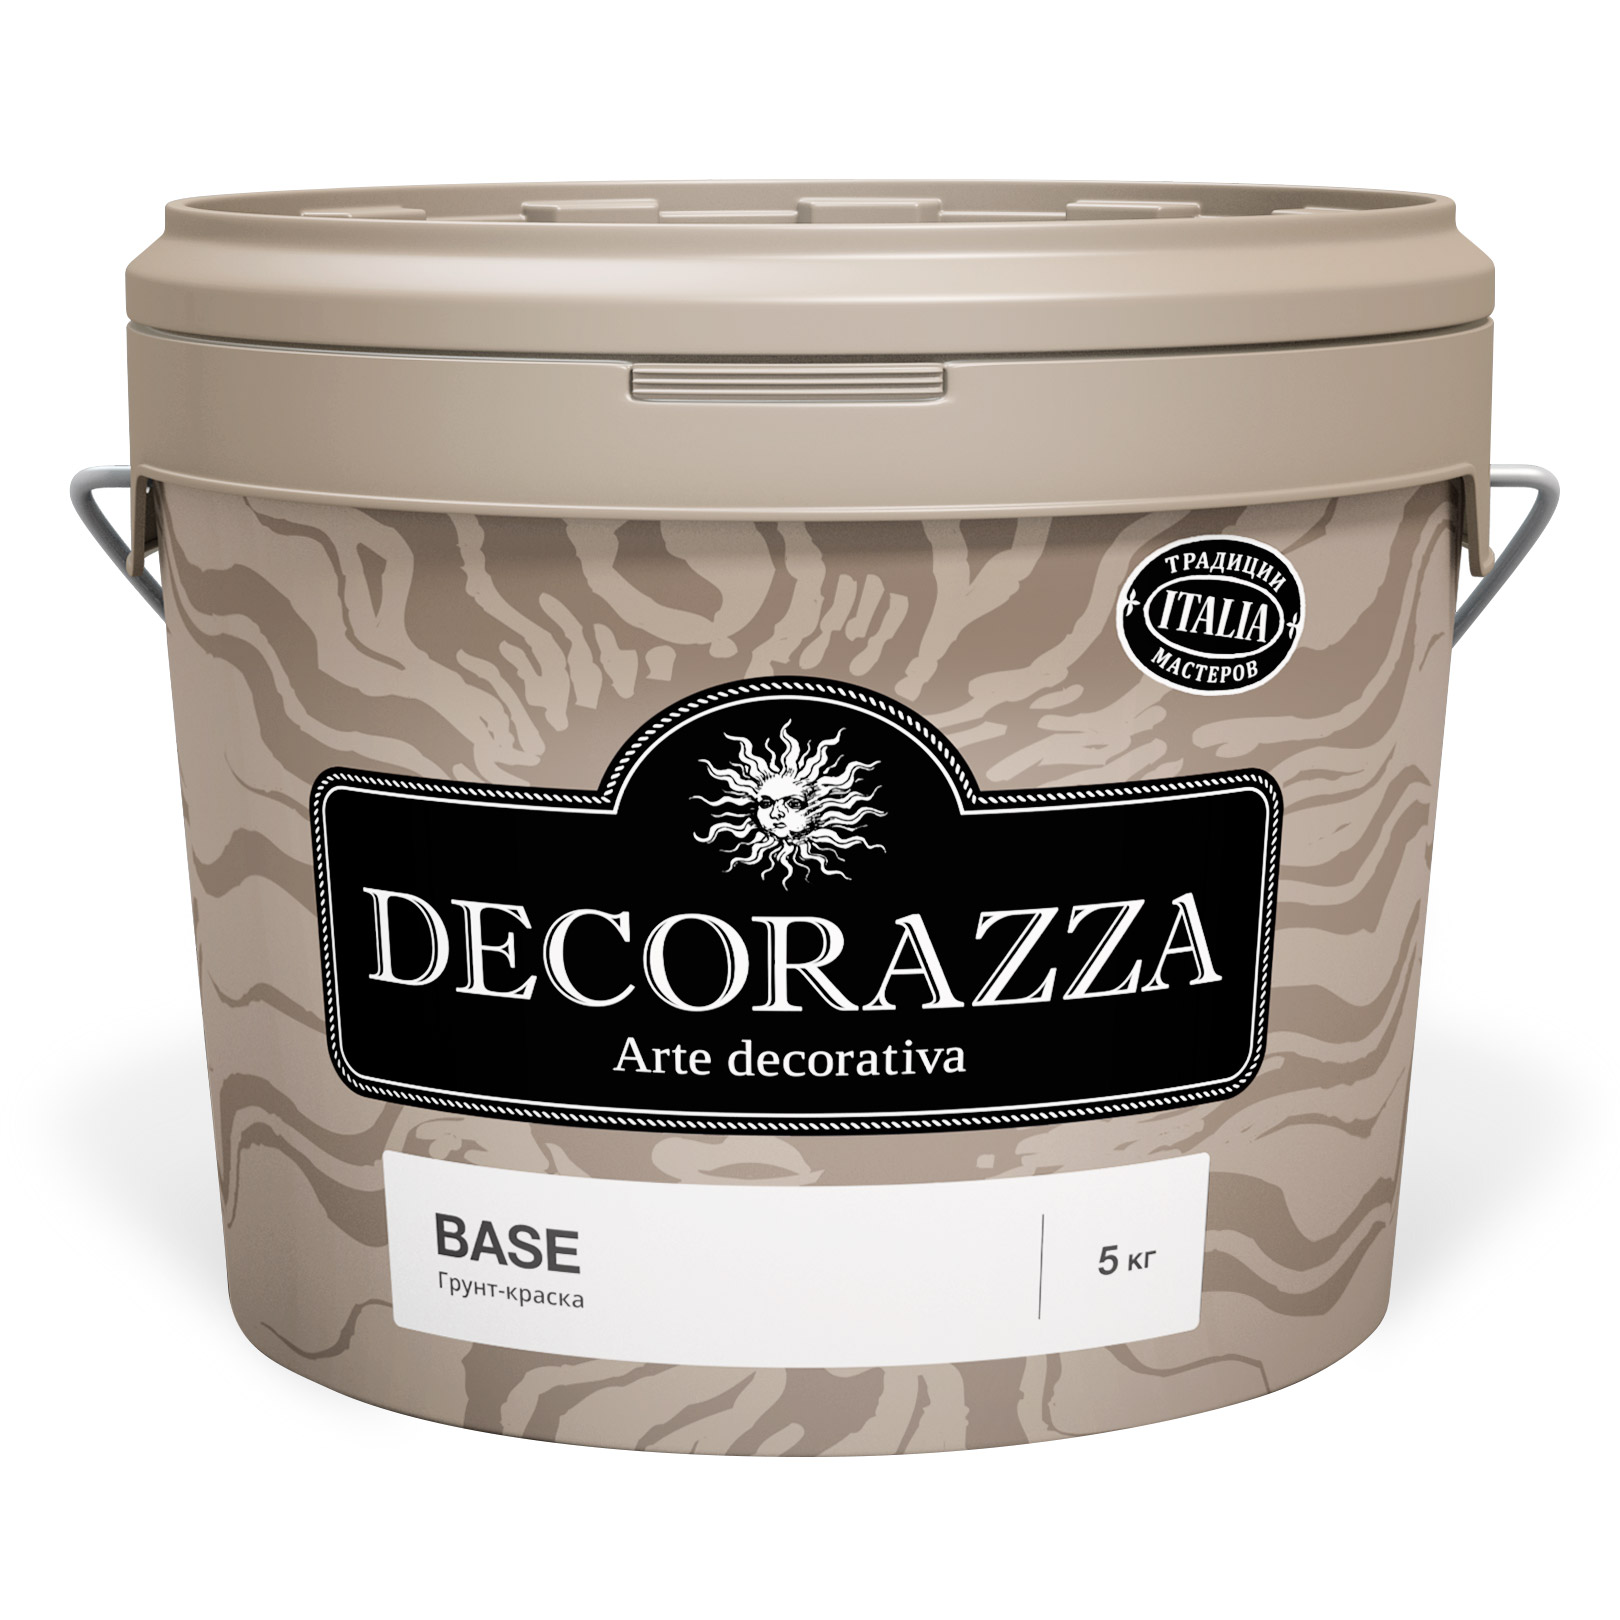 Грунтовка Decorazza Base DB1-150/90 лак decorazza fleur deco base incolore 1 л